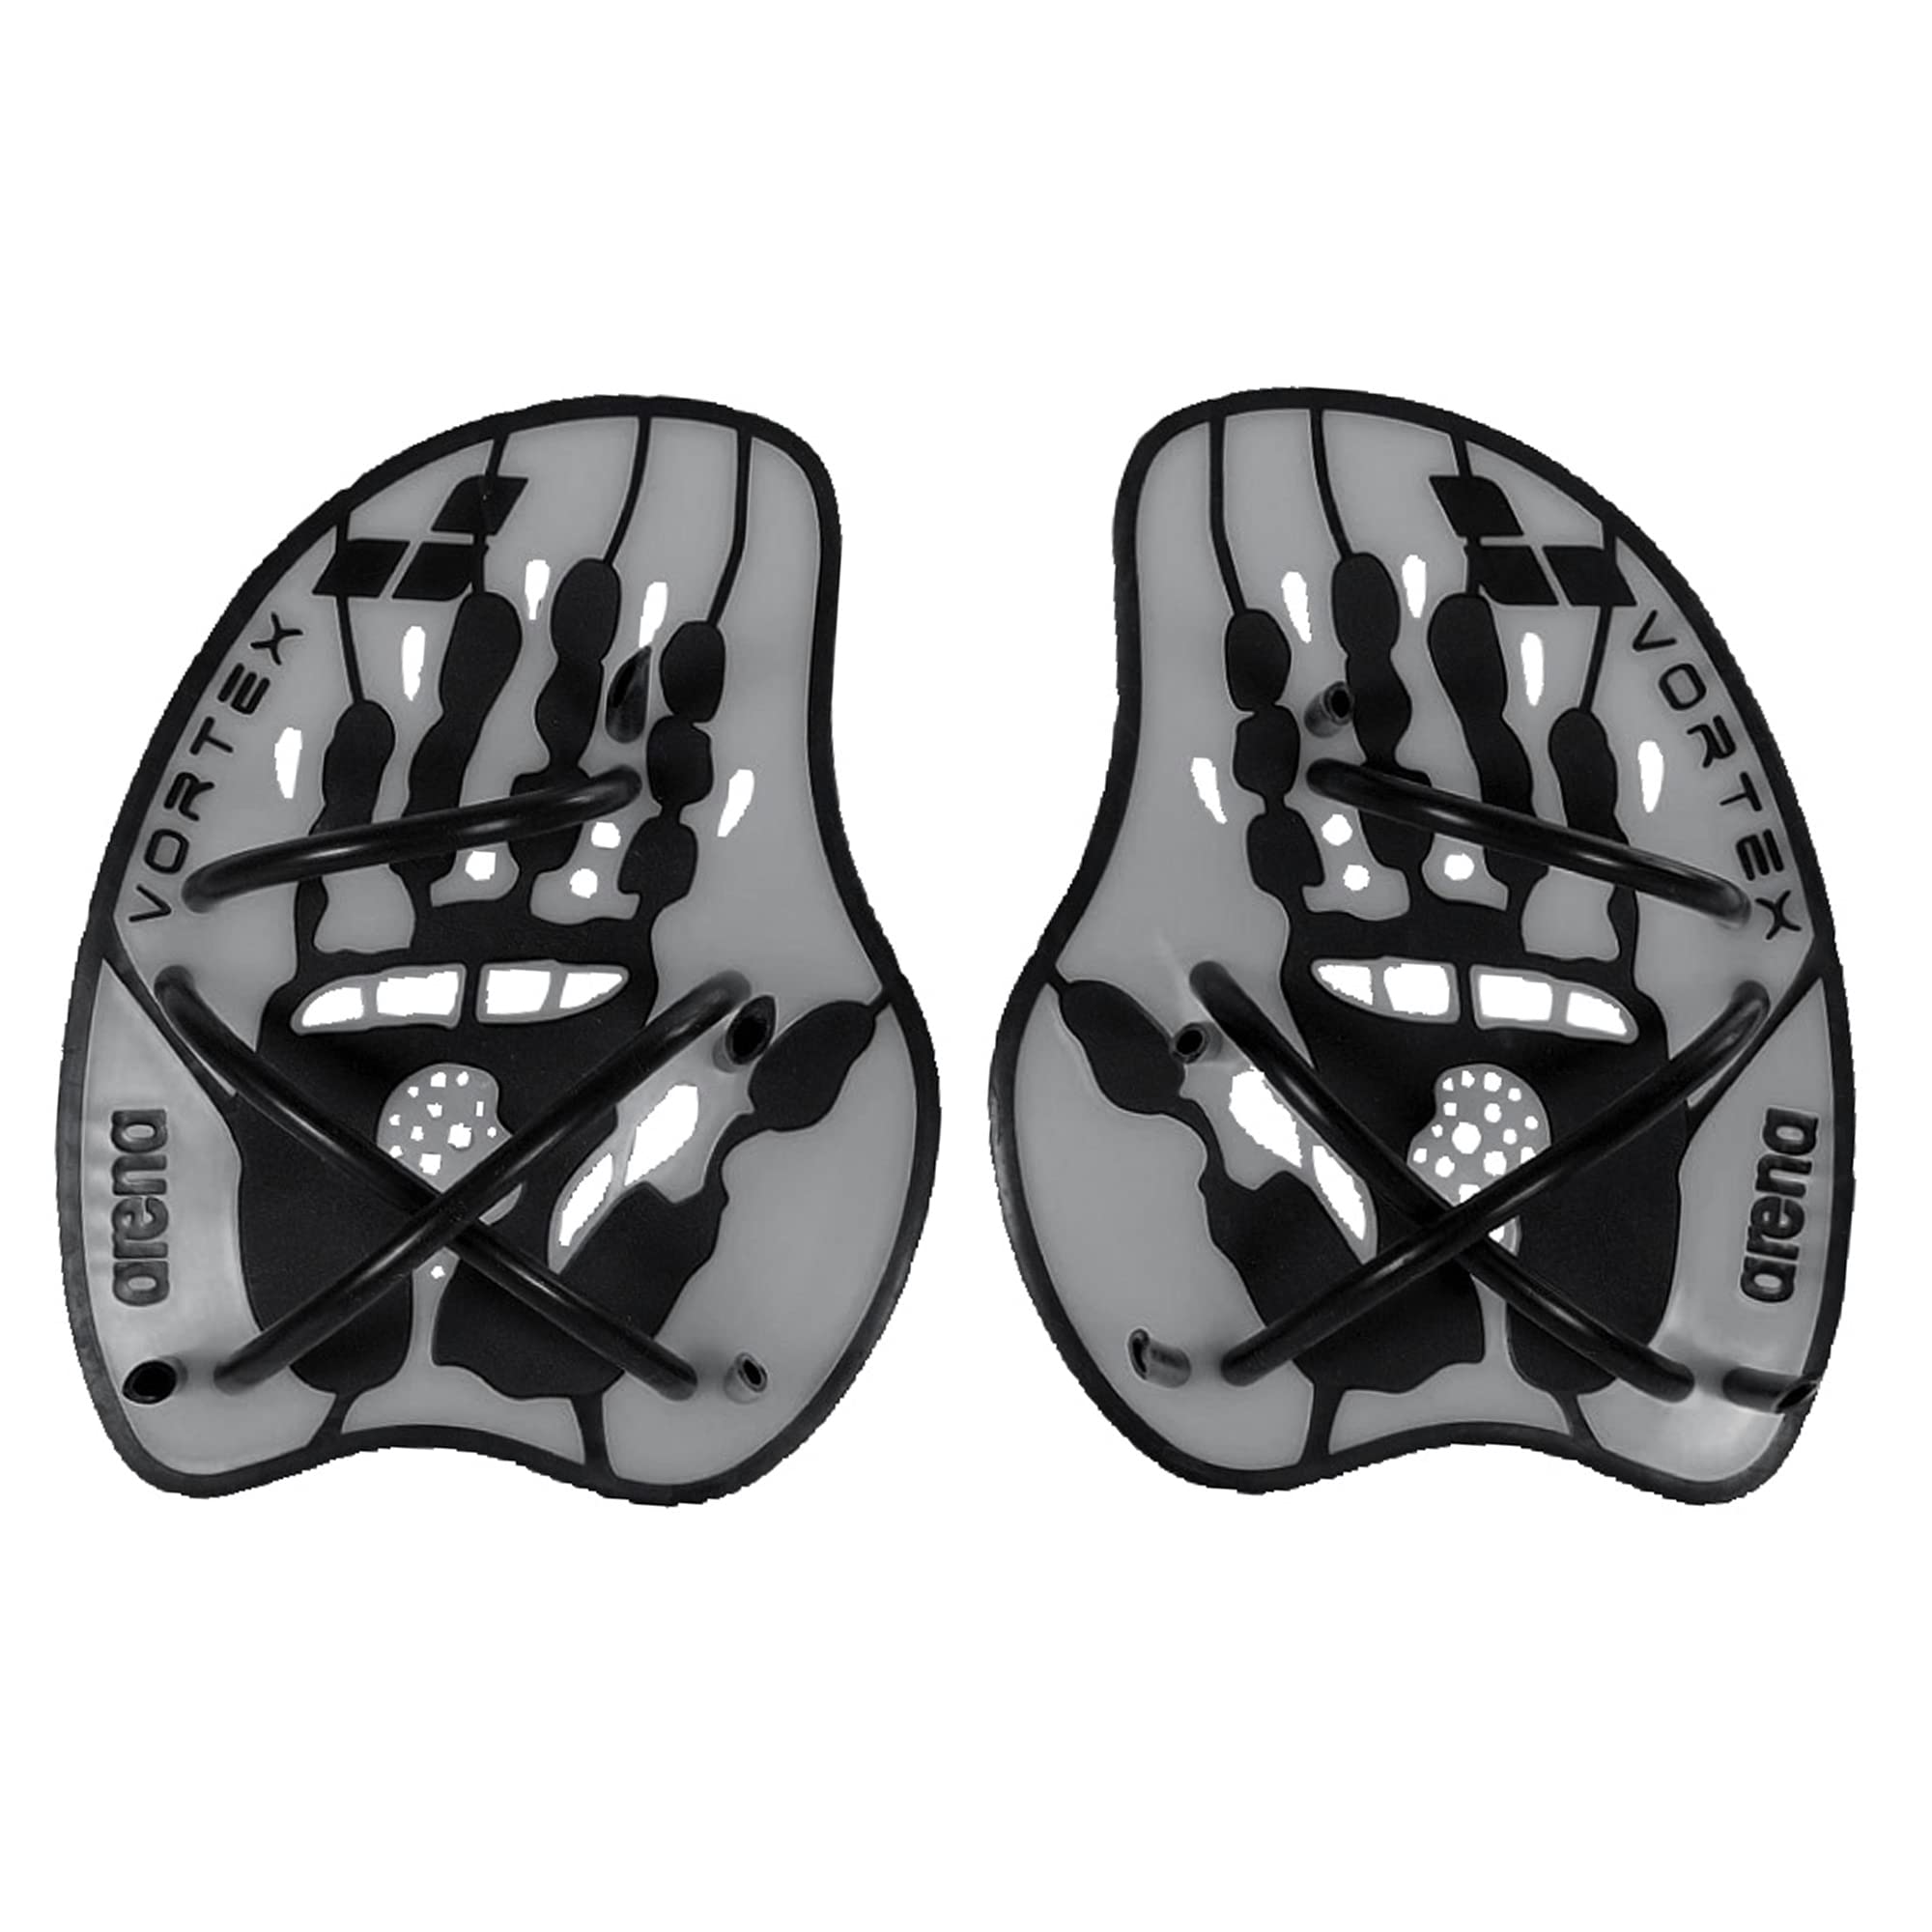 Arena Unisex Adult Vortex Evolution Swimming Hand Paddles for Women and Men Adjustable Straps Curved Design, Silver/Black, Mediu